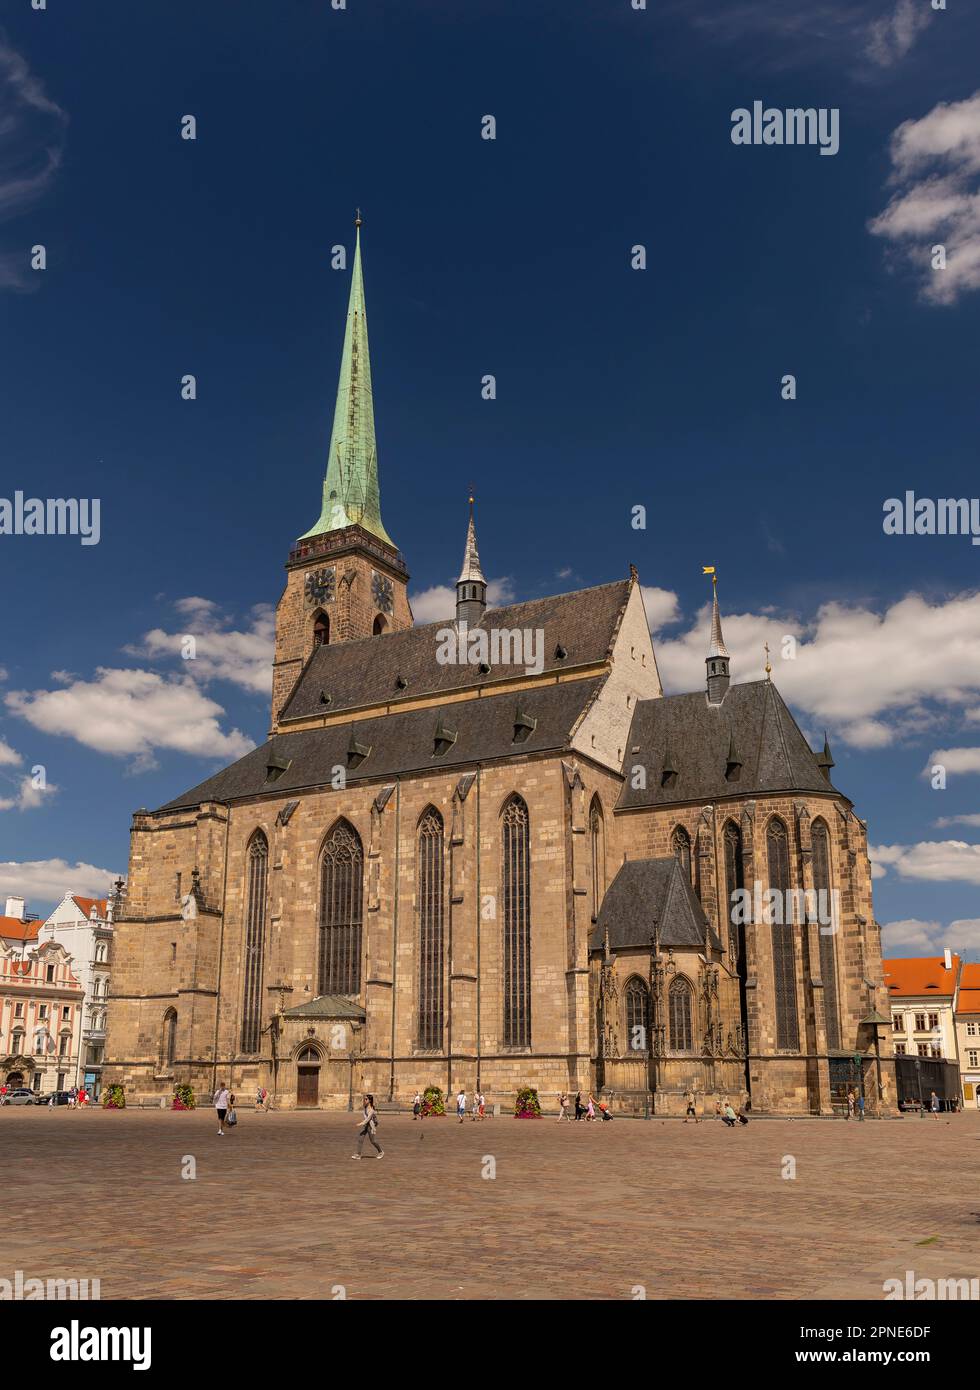 PILSEN, RÉPUBLIQUE TCHÈQUE, EUROPE - la Cathédrale de Saint Bartholomée, une église gothique sur la place principale de Pilsen. Banque D'Images